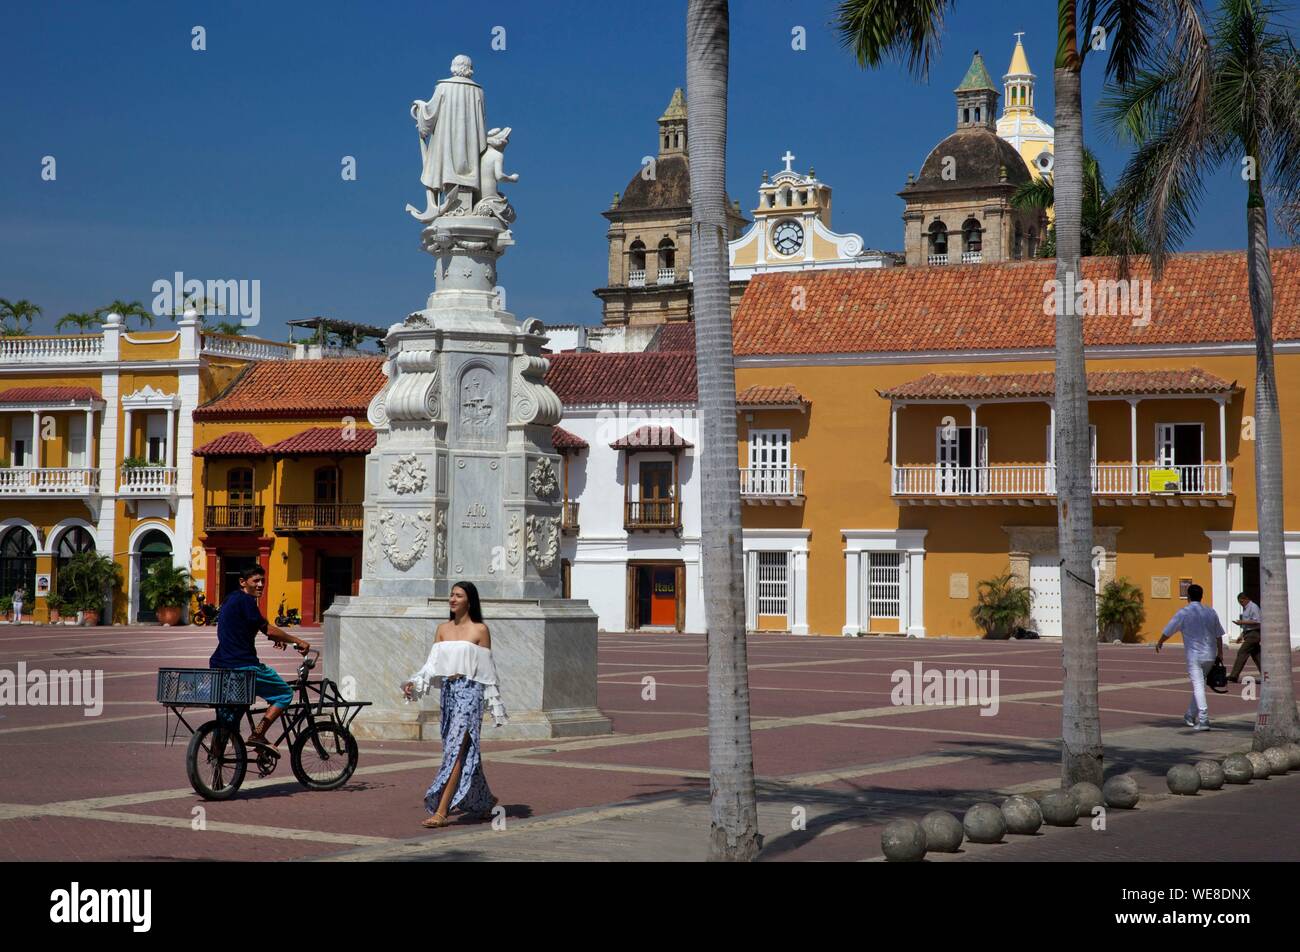 La Colombie, Département de Bolivar, Carthagène, inscrite au Patrimoine Mondial de l'UNESCO, les jeunes élégamment vêtu colombien sur la place de San Pedro Claver et ses façades coloniales, situé dans la vieille ville Banque D'Images